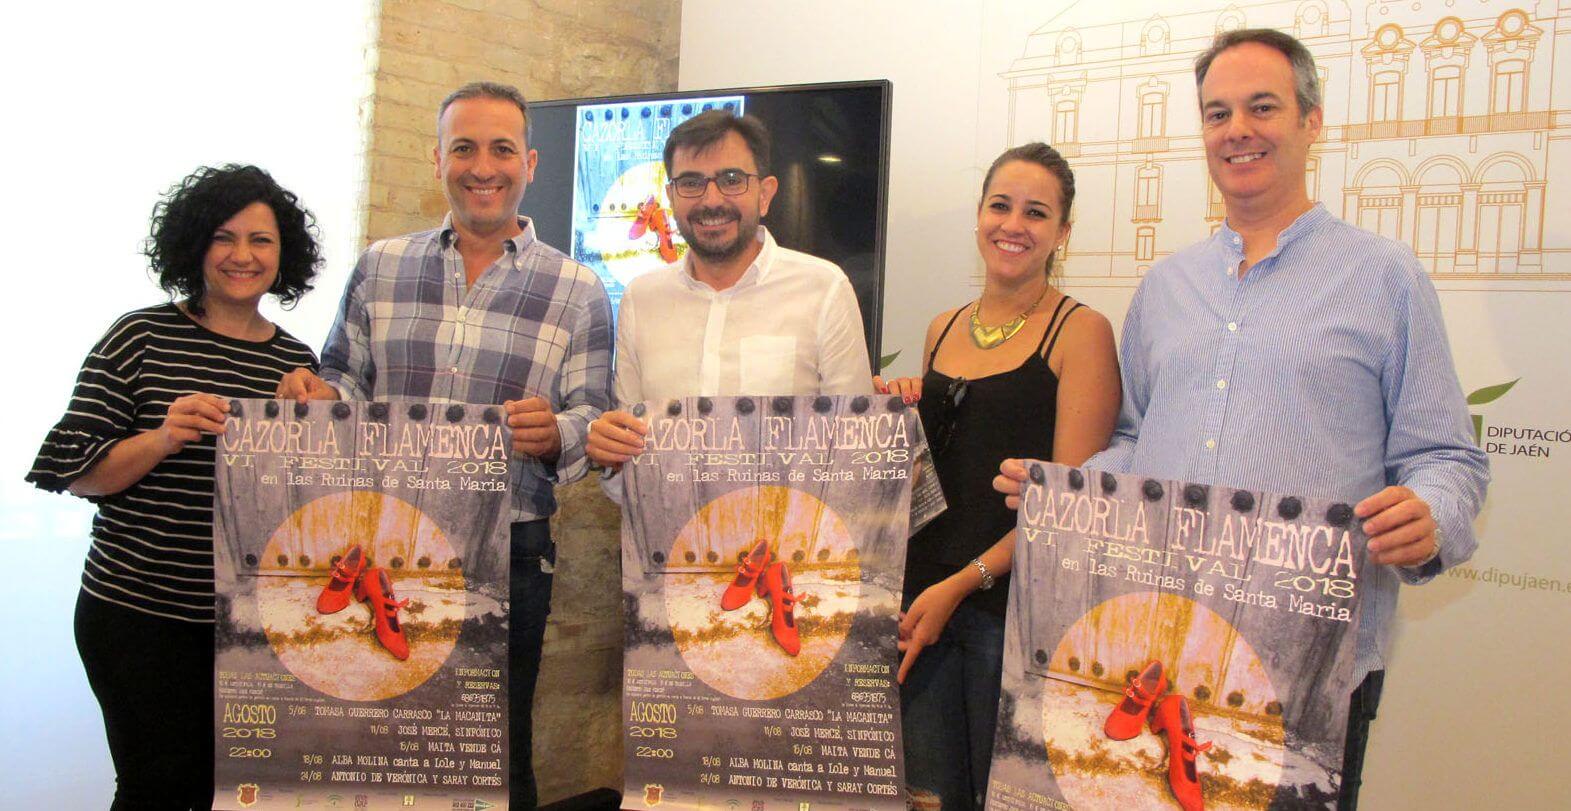 Cazorla se volverá flamenca del 5 al 24 de agosto con un festival que contará con José Mercé o La Macanita, entre otros